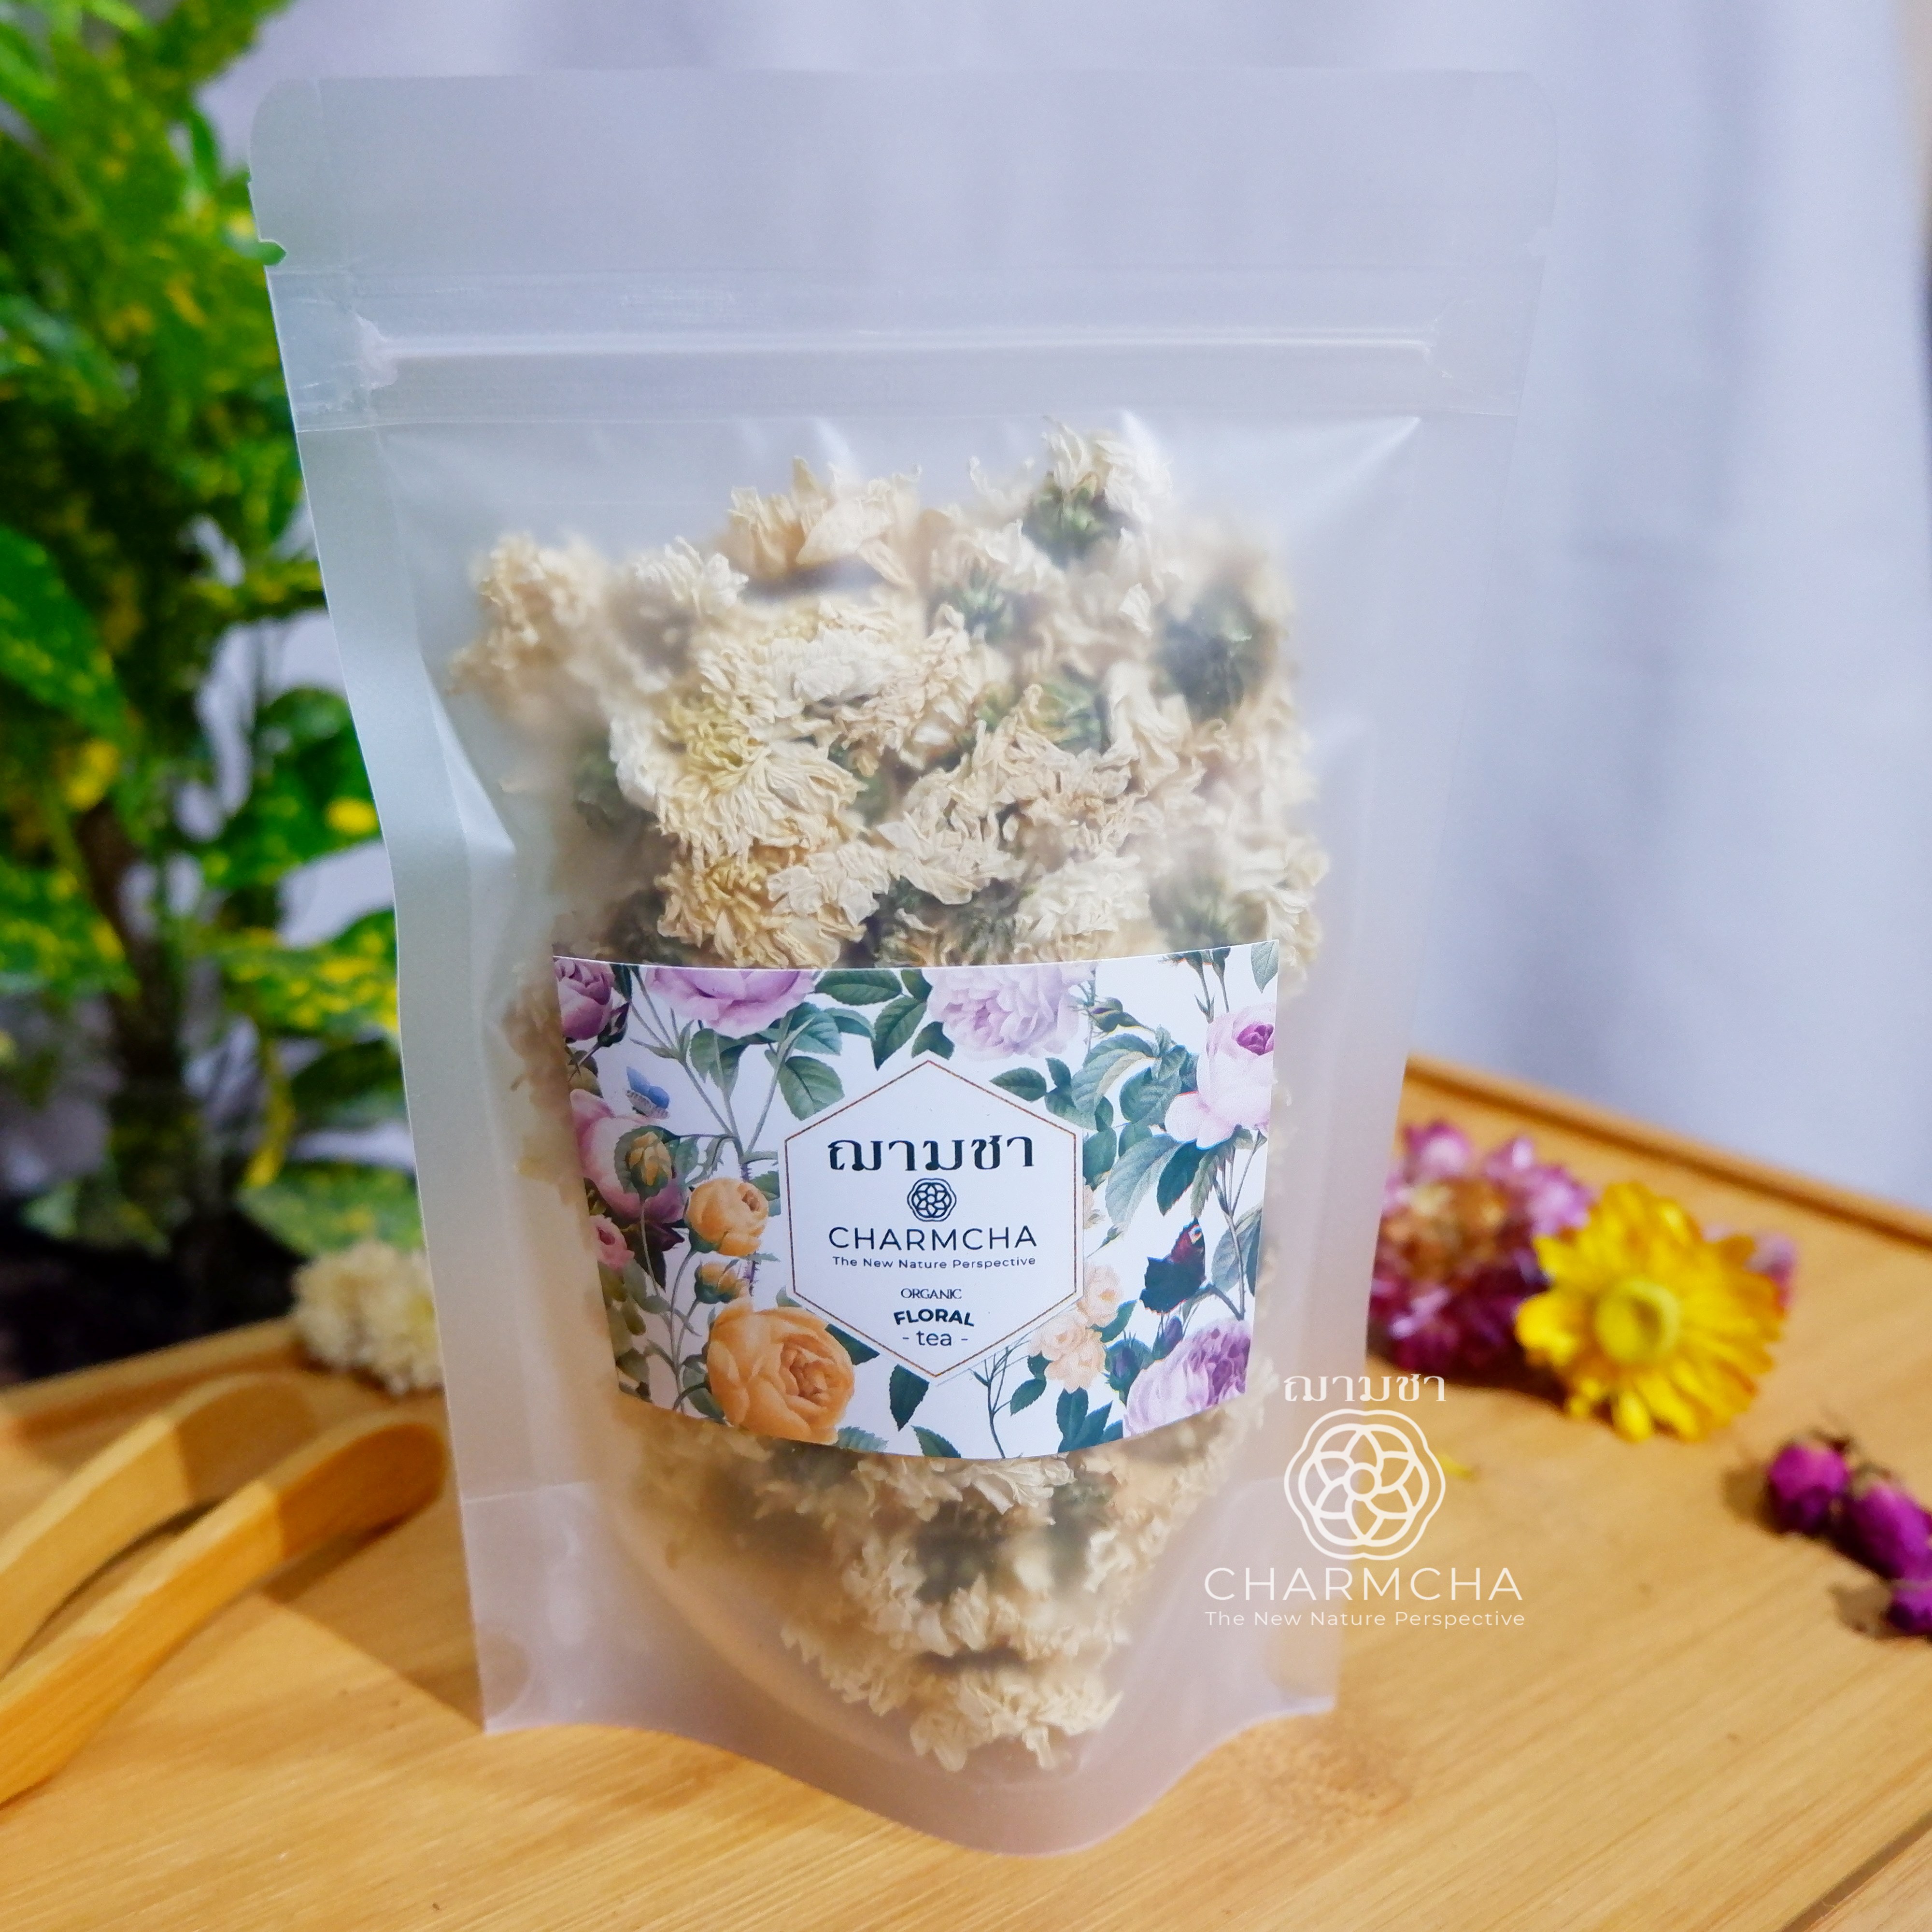 ชาดอกเก็กฮวยขาว (White chrysanthemum Flower Tea) แก้ร้อนใน วิตามินซีสูง ช่วยให้หลอดเลือดแข็งแรง ชาดอกไม้ Charmcha ฌามชา